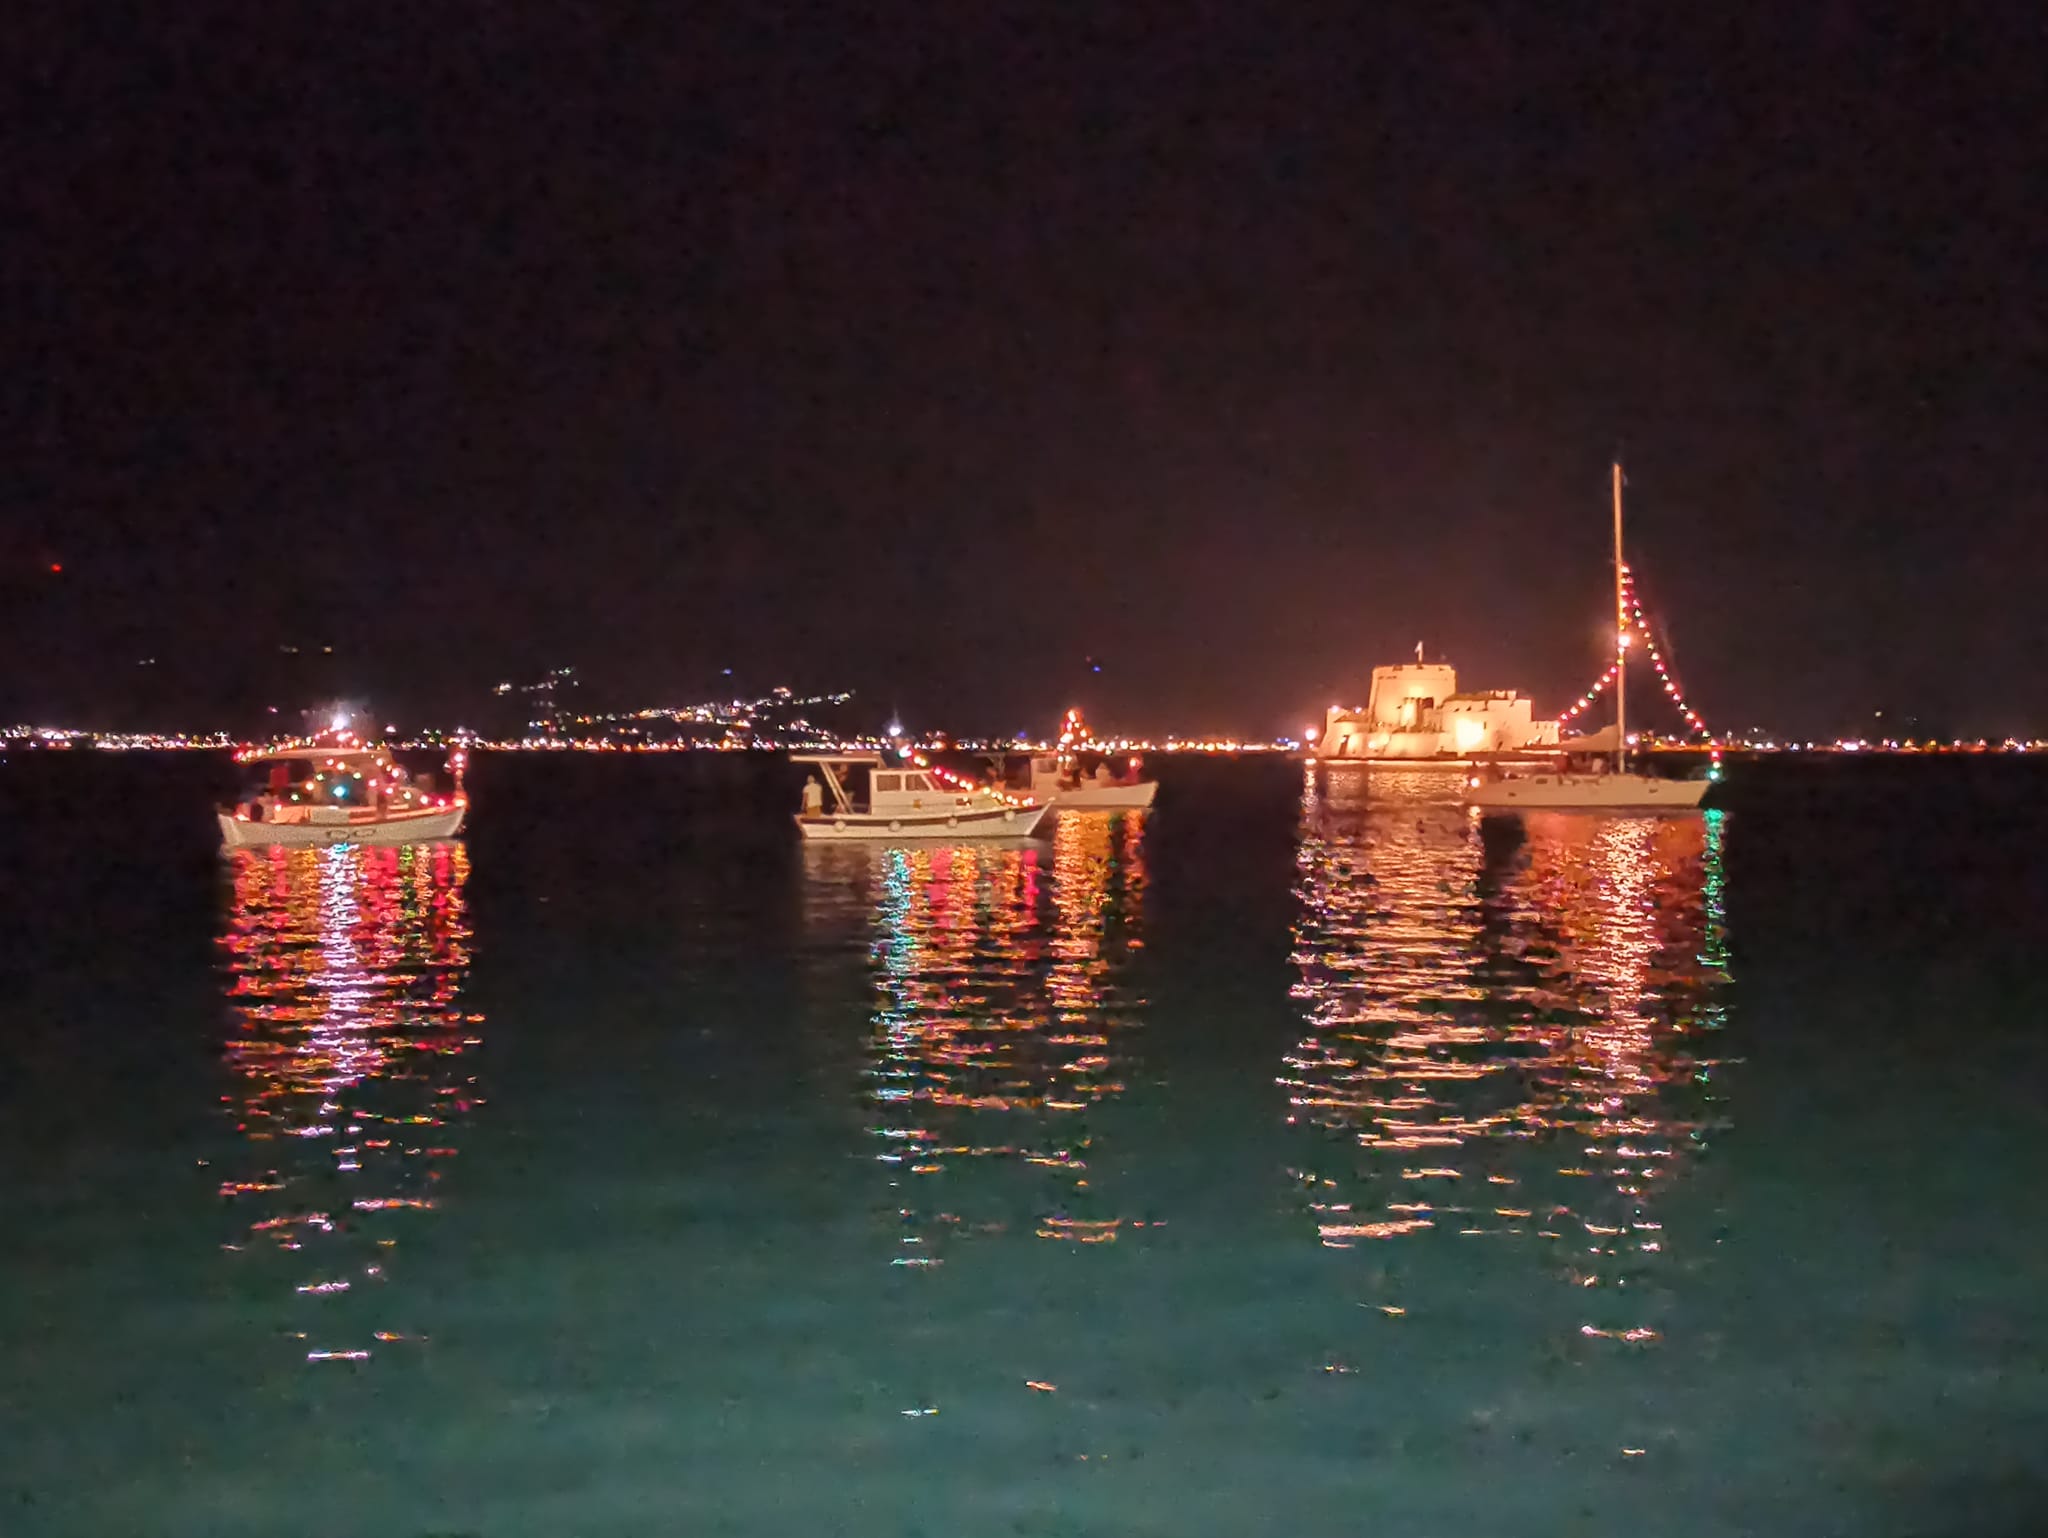 Βαρκαρόλα: Μία γιορτή για τον αφανή ναύτη και τη θάλασσα στο Ναύπλιο